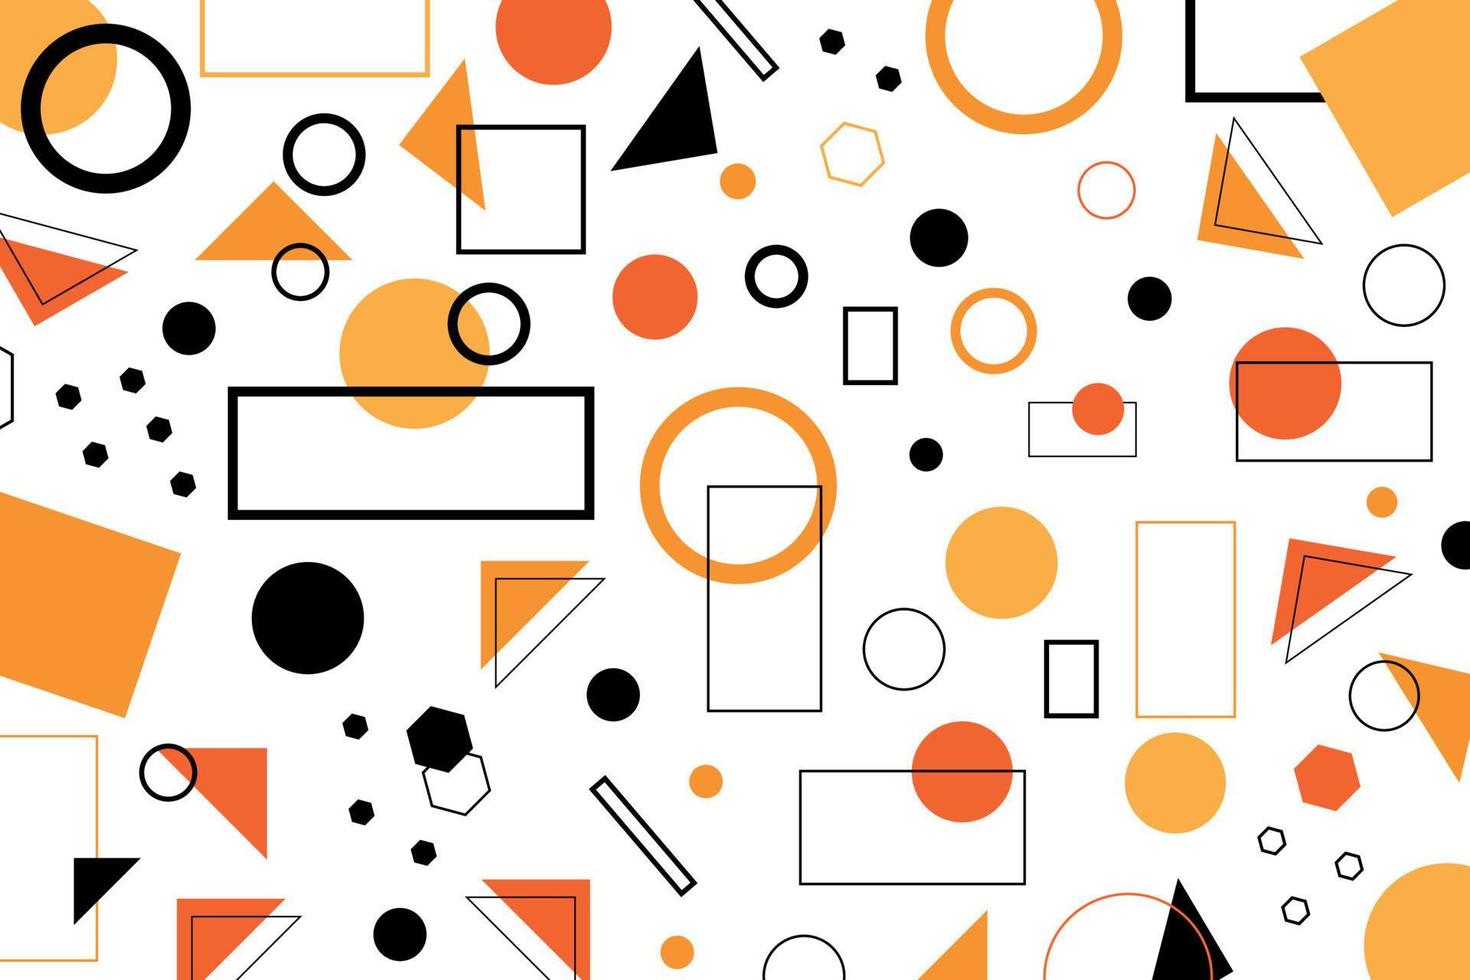 achtergrond met geometrische vormen in oranje en zwarte kleuren vector